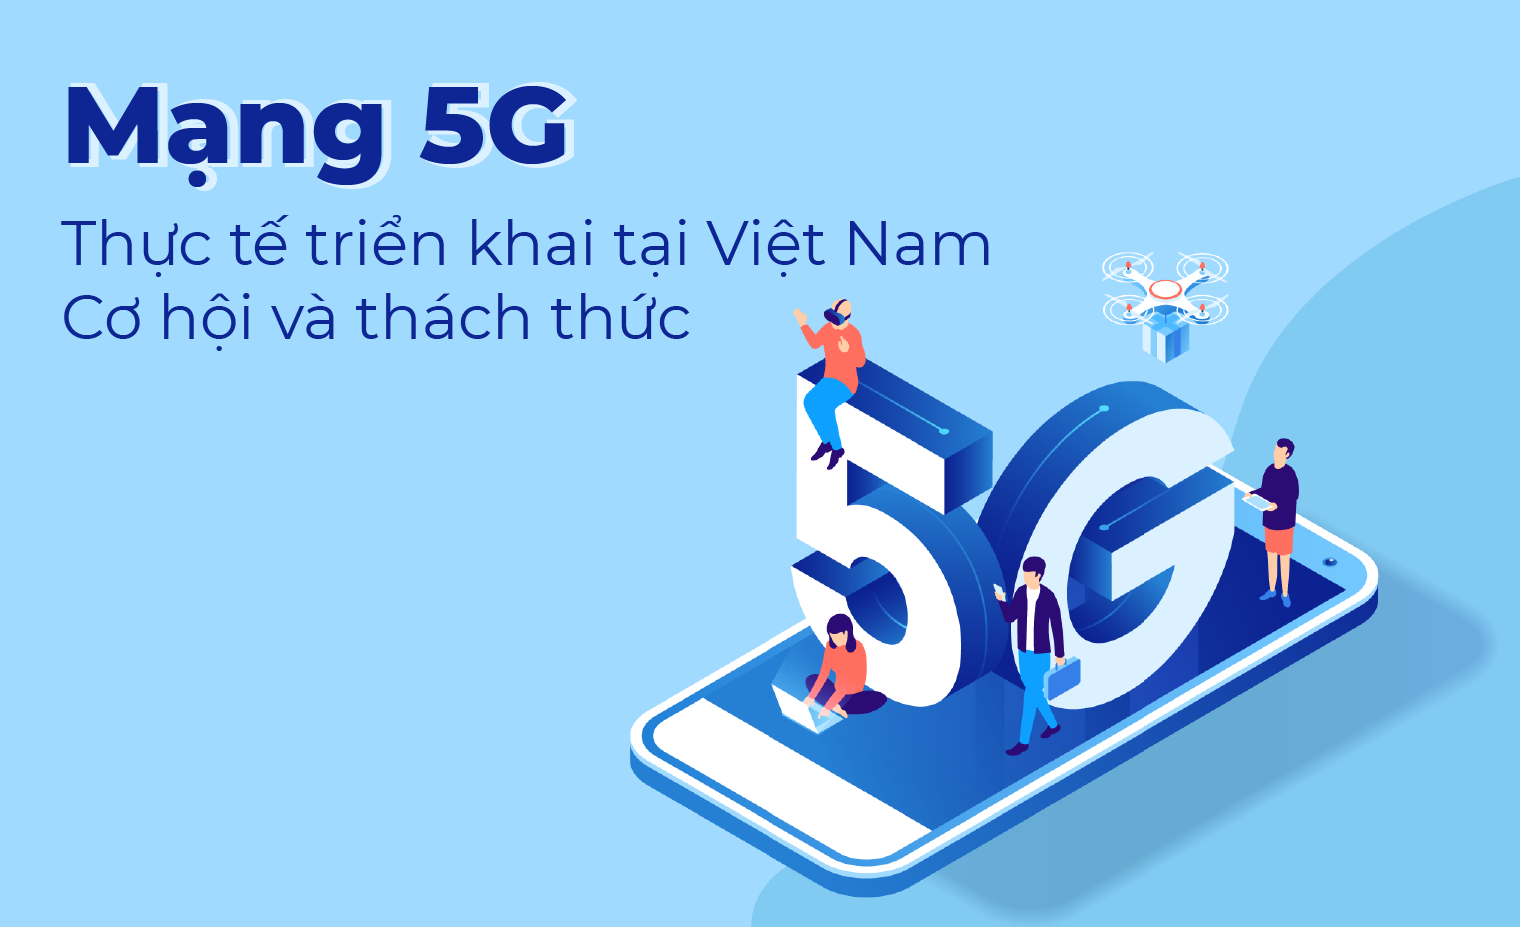 Mạng 5G: Thực tế triển khai tại Việt Nam - Cơ hội và thách thức